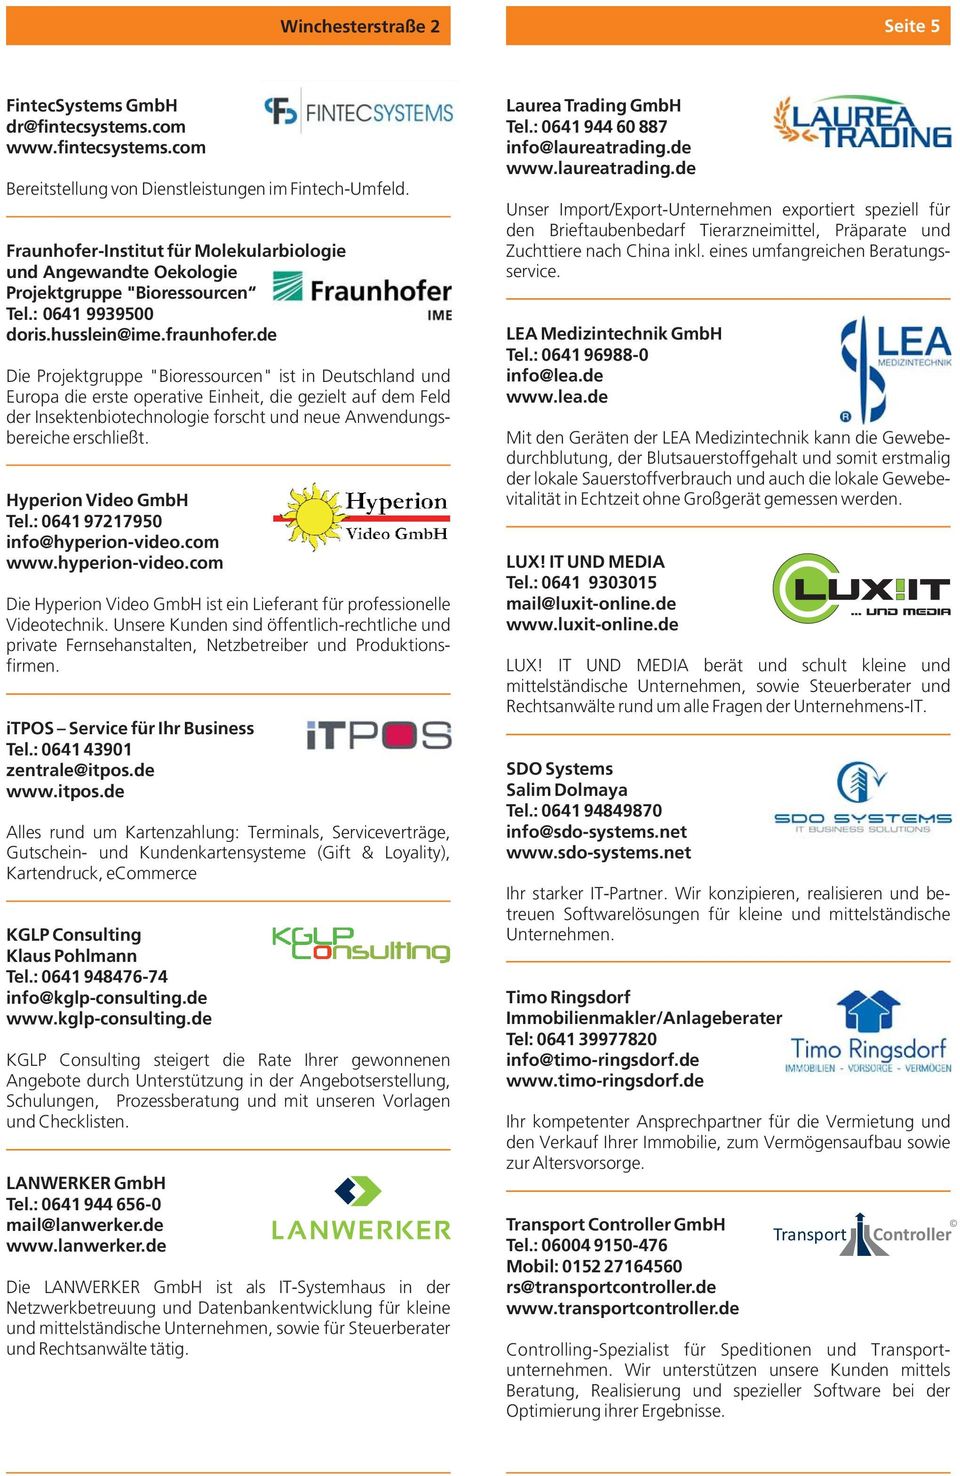 de Die Projektgruppe "Bioressourcen" ist in Deutschland und Europa die erste operative Einheit, die gezielt auf dem Feld der Insektenbiotechnologie forscht und neue Anwendungsbereiche erschließt.